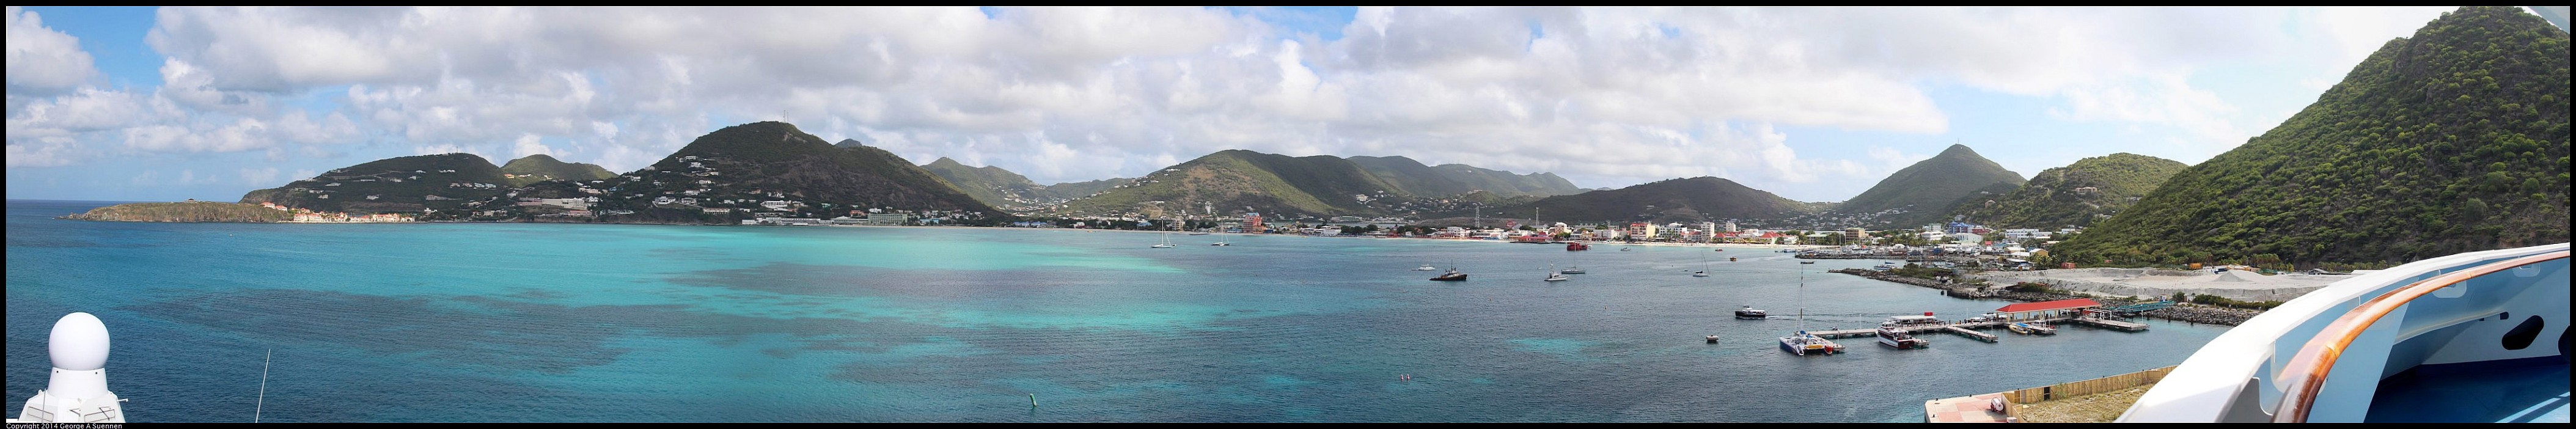 St_Maarten.jpg - St. Maarten - Cruise Ship Port